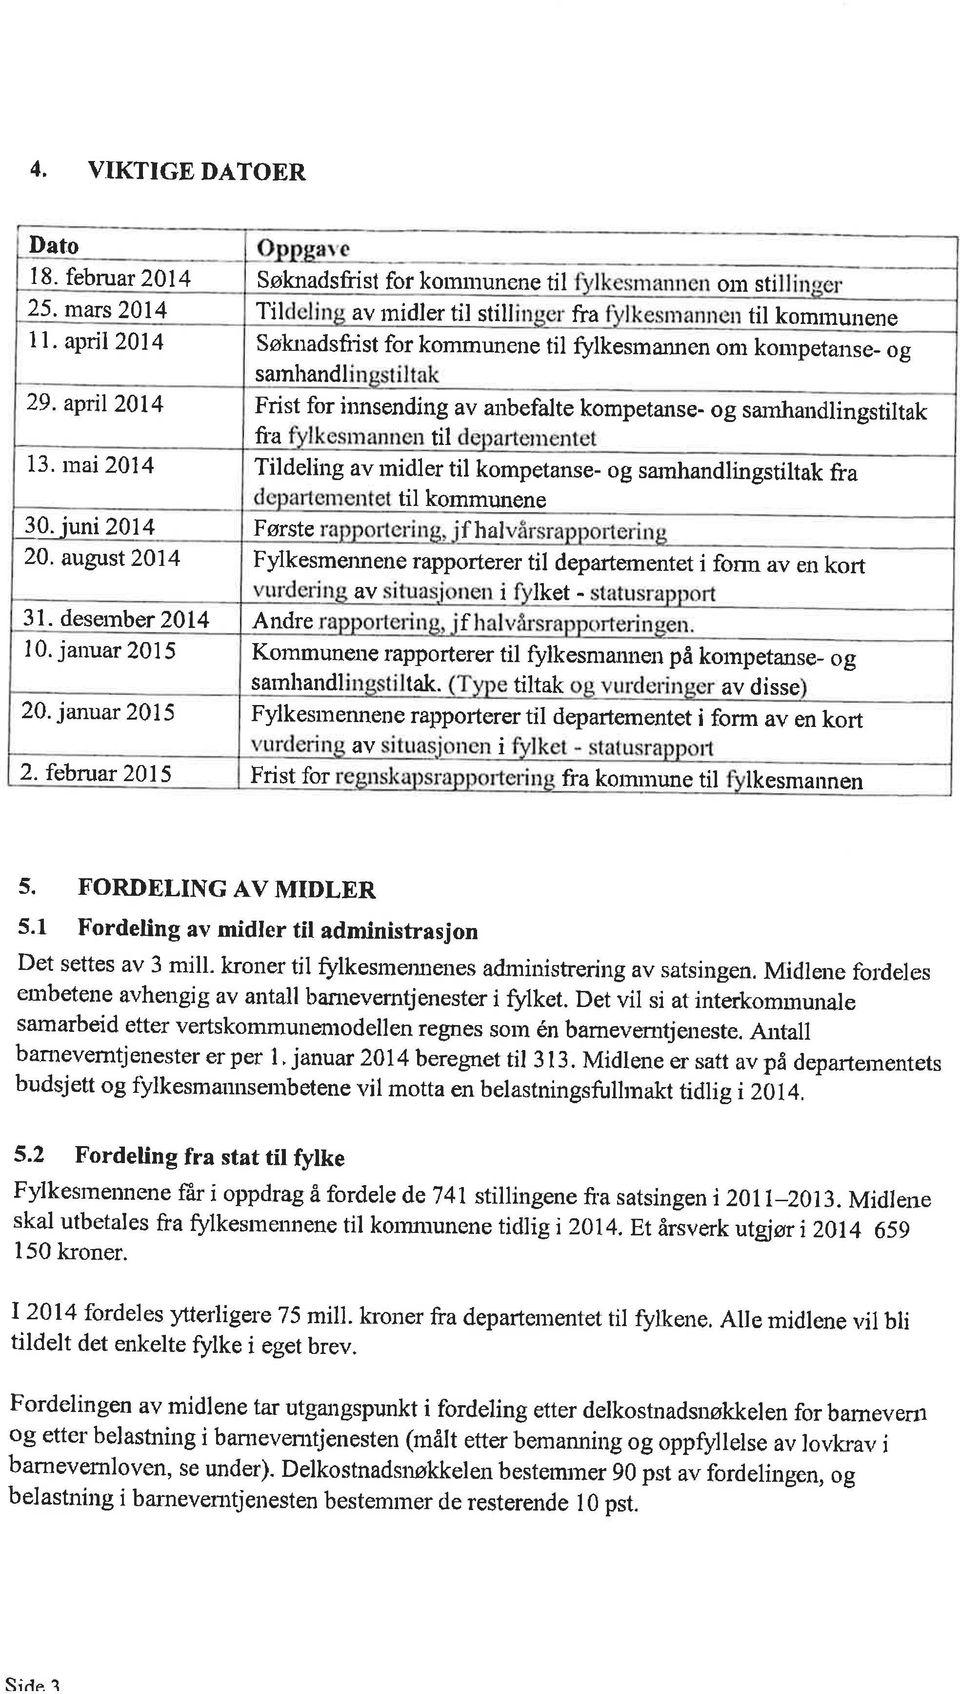 nu2014 fia ril Tildeling av rnidler til kompetanse- og sarnhandlingstiltak fra til kommunene 30. juni 2014 Første fhal 20.